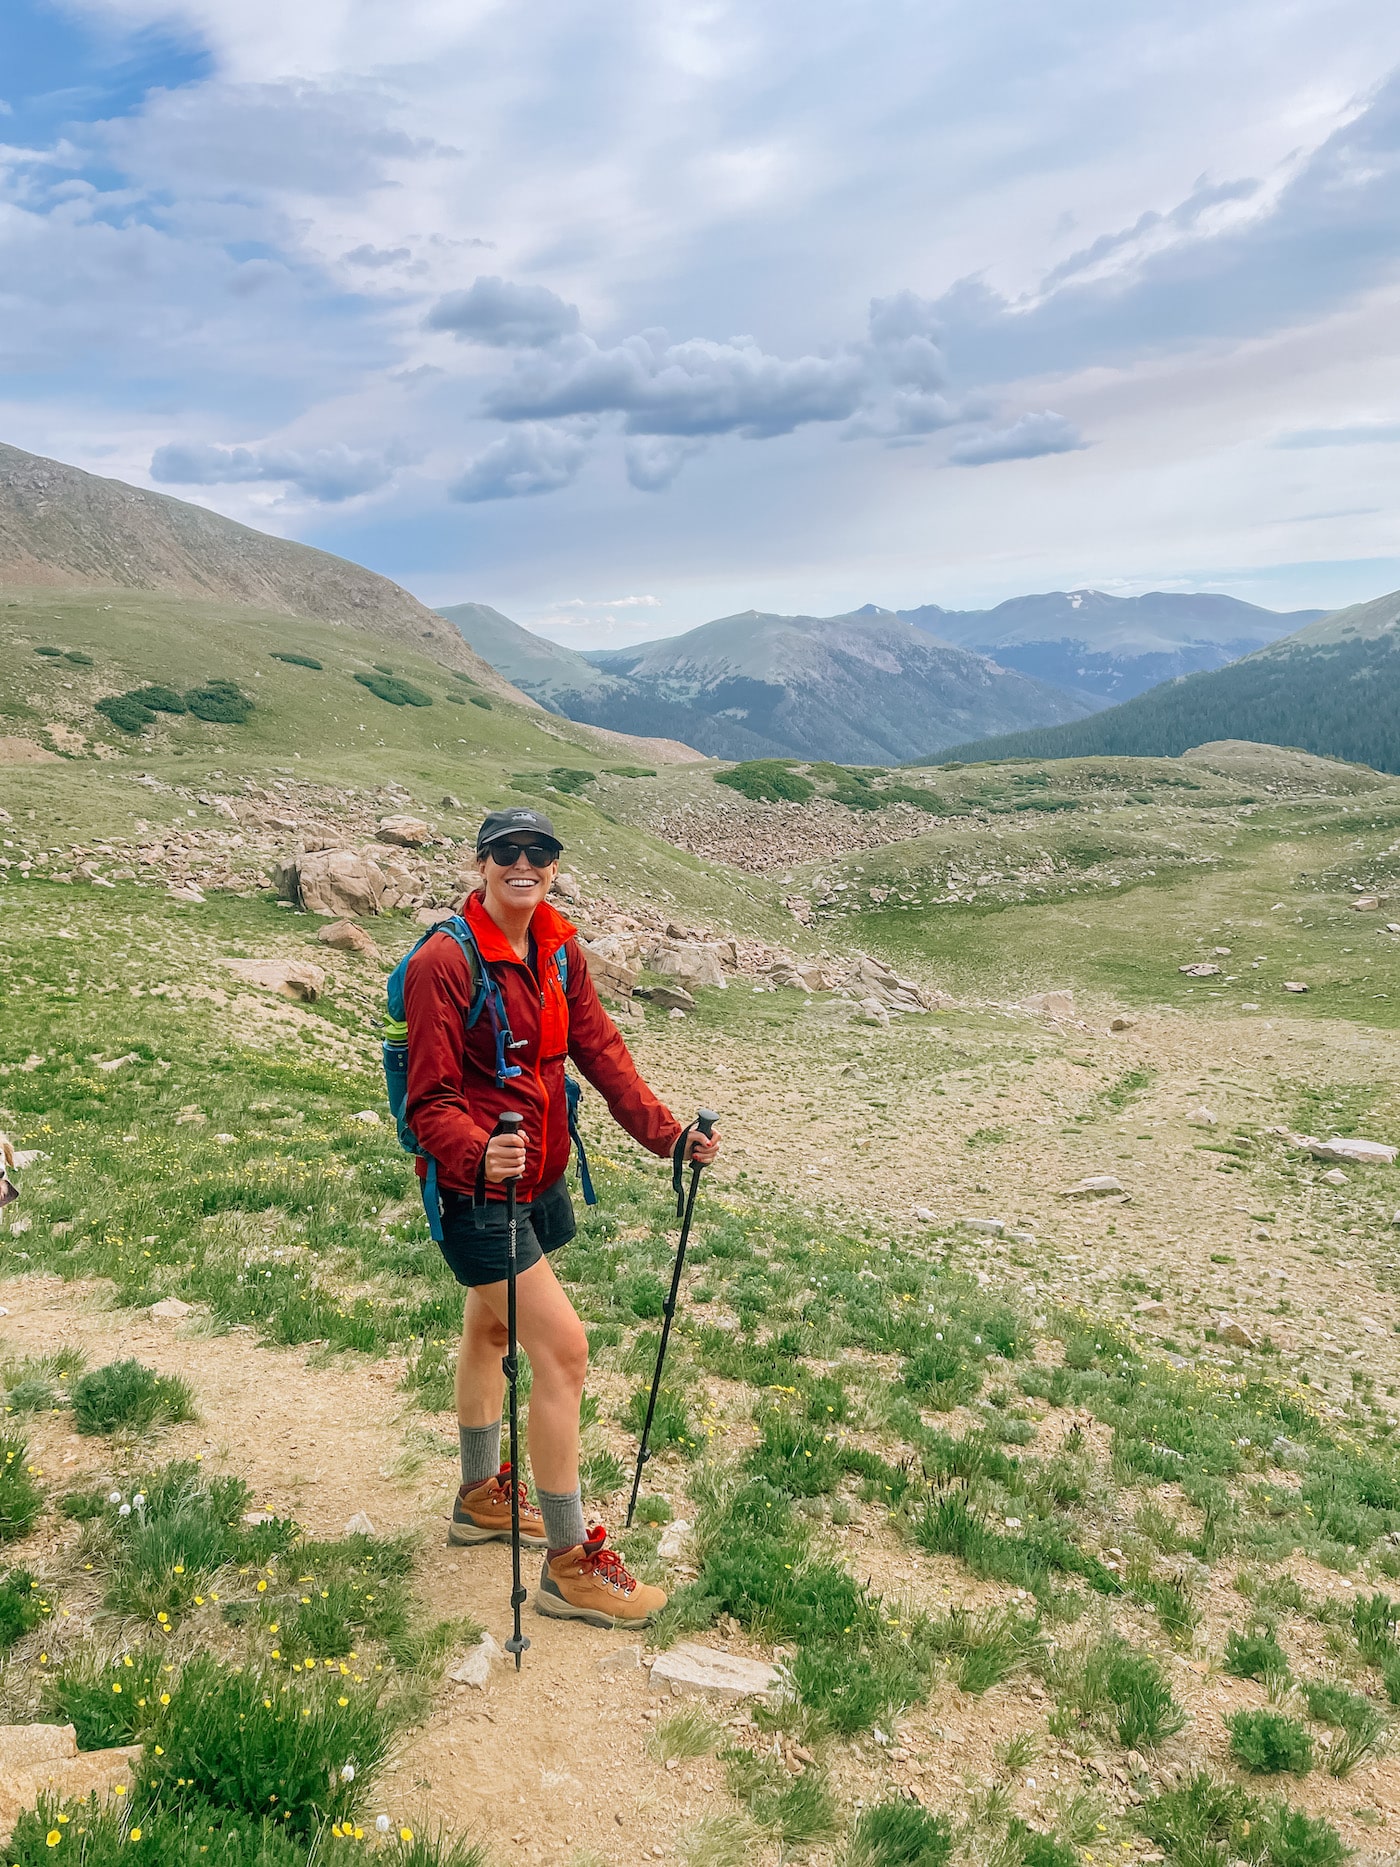 The Best Hike Near Denver: Butler Gulch